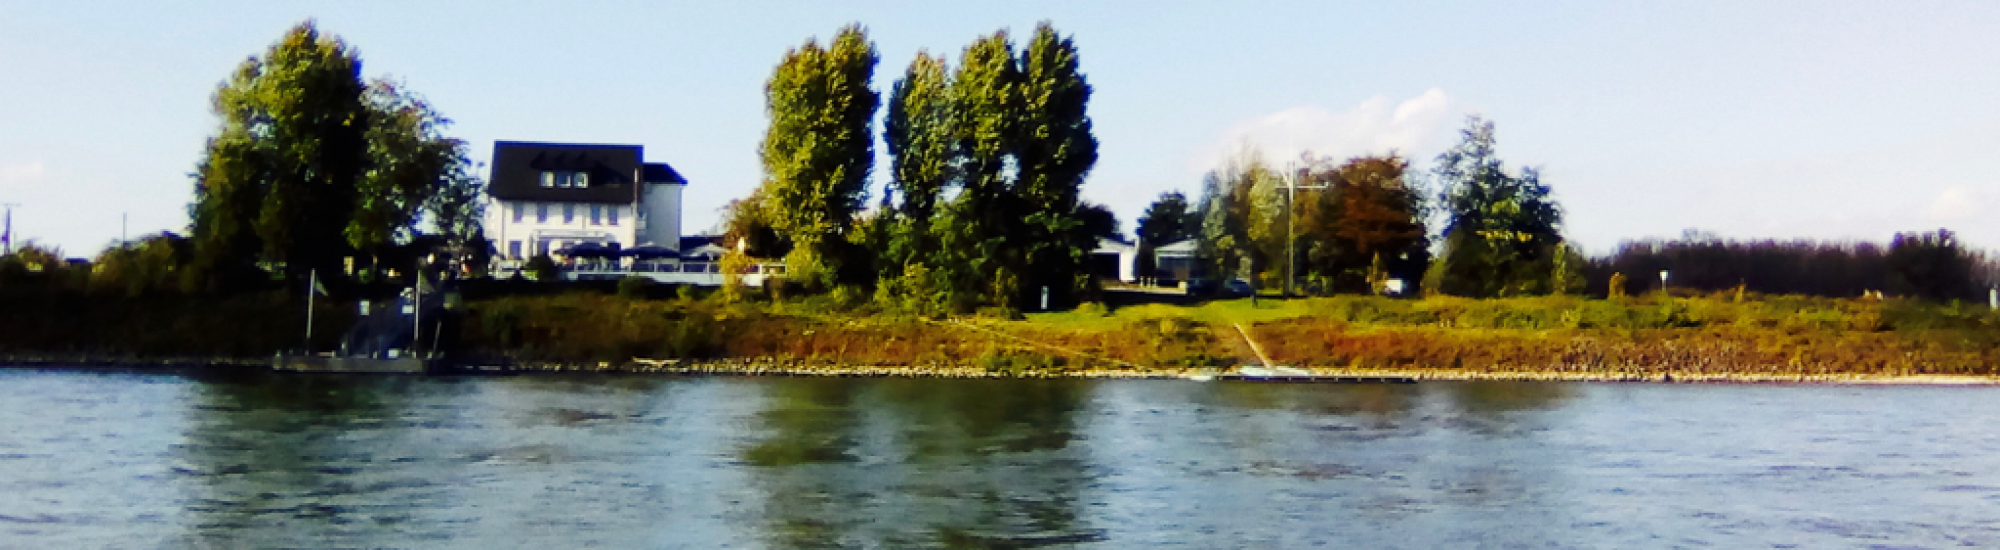 Luda ist Monheim am Rhein - Bild eingesendet von Luda Liebe